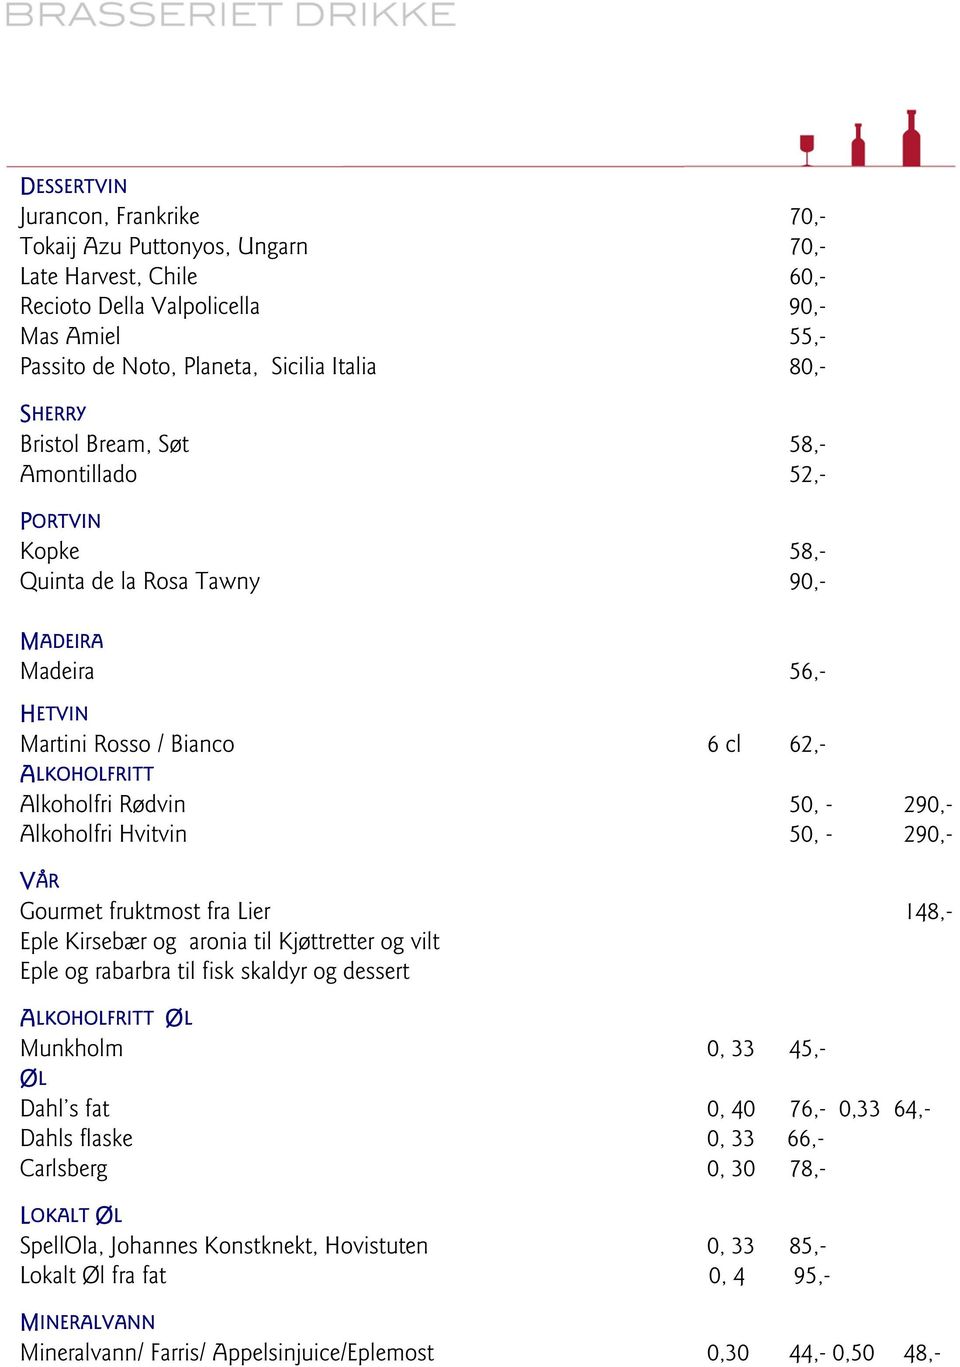 Alkoholfri Hvitvin 50, - 290,- VÅR Gourmet fruktmost fra Lier 148,- Eple Kirsebær og aronia til Kjøttretter og vilt Eple og rabarbra til fisk skaldyr og dessert ALKOHOLFRITT ØL Munkholm 0, 33 45,- ØL